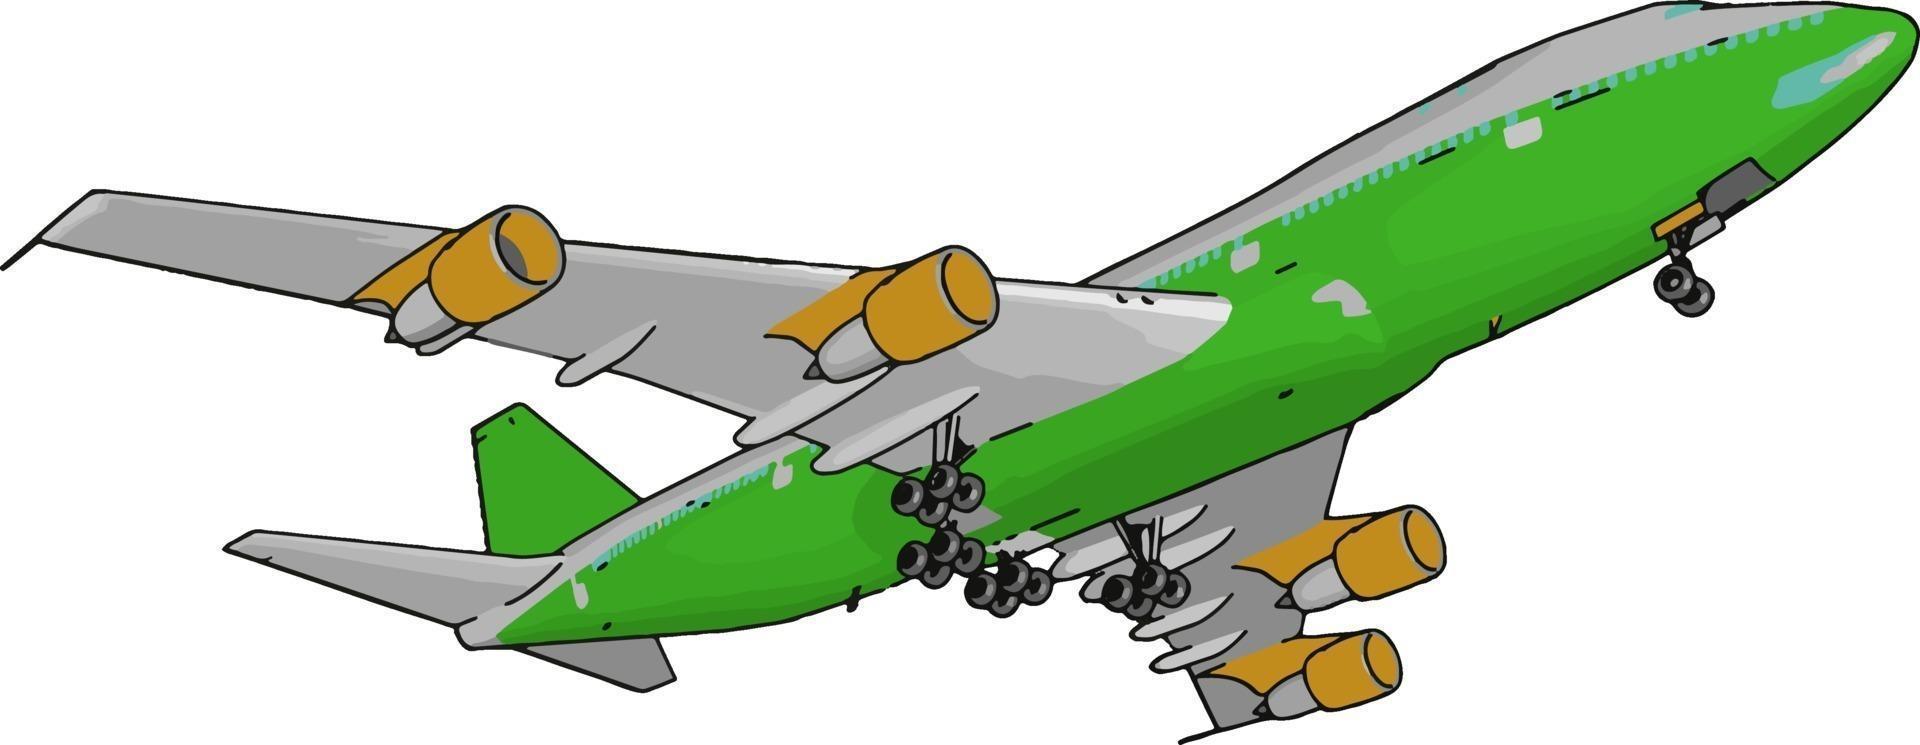 grön passagerare plan, illustration, vektor på vit bakgrund.